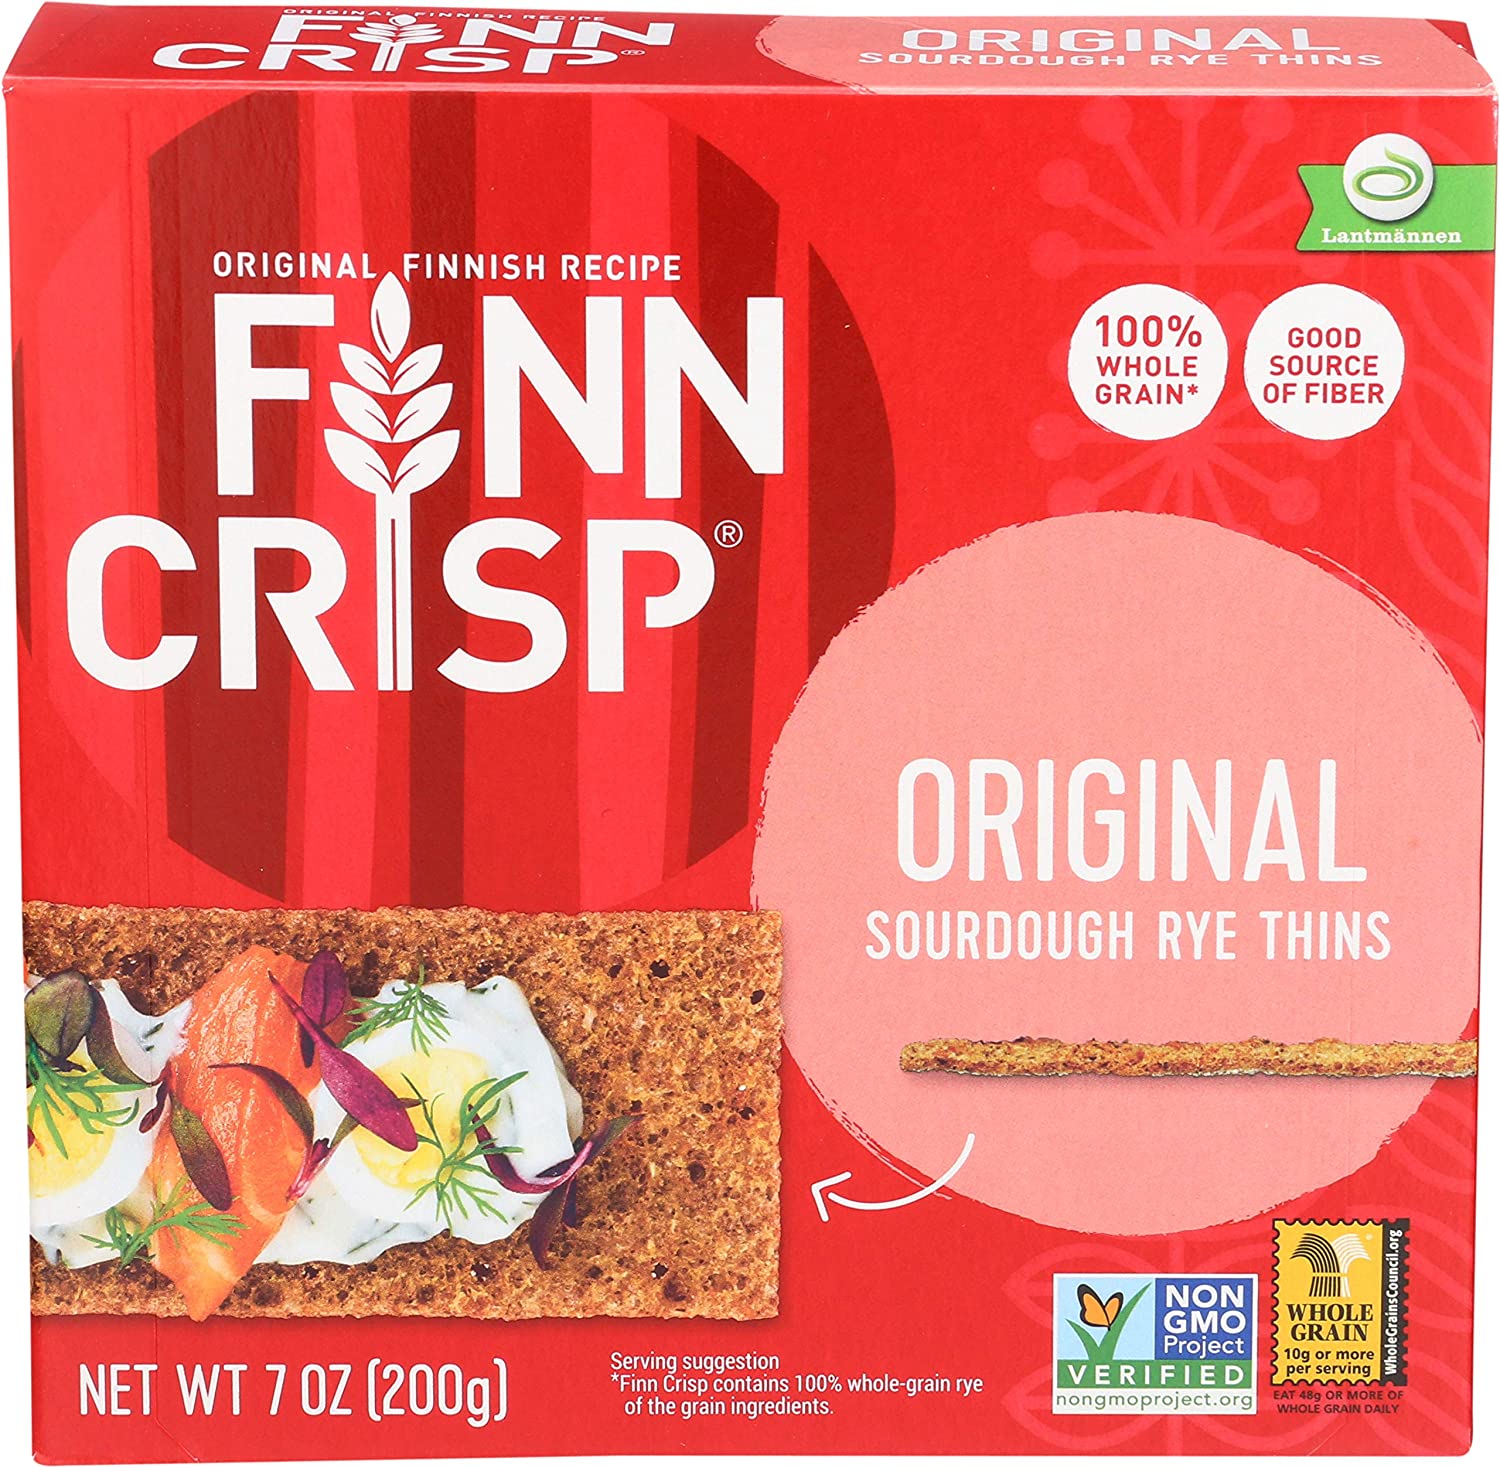 Finn Crisp Original Crispbread